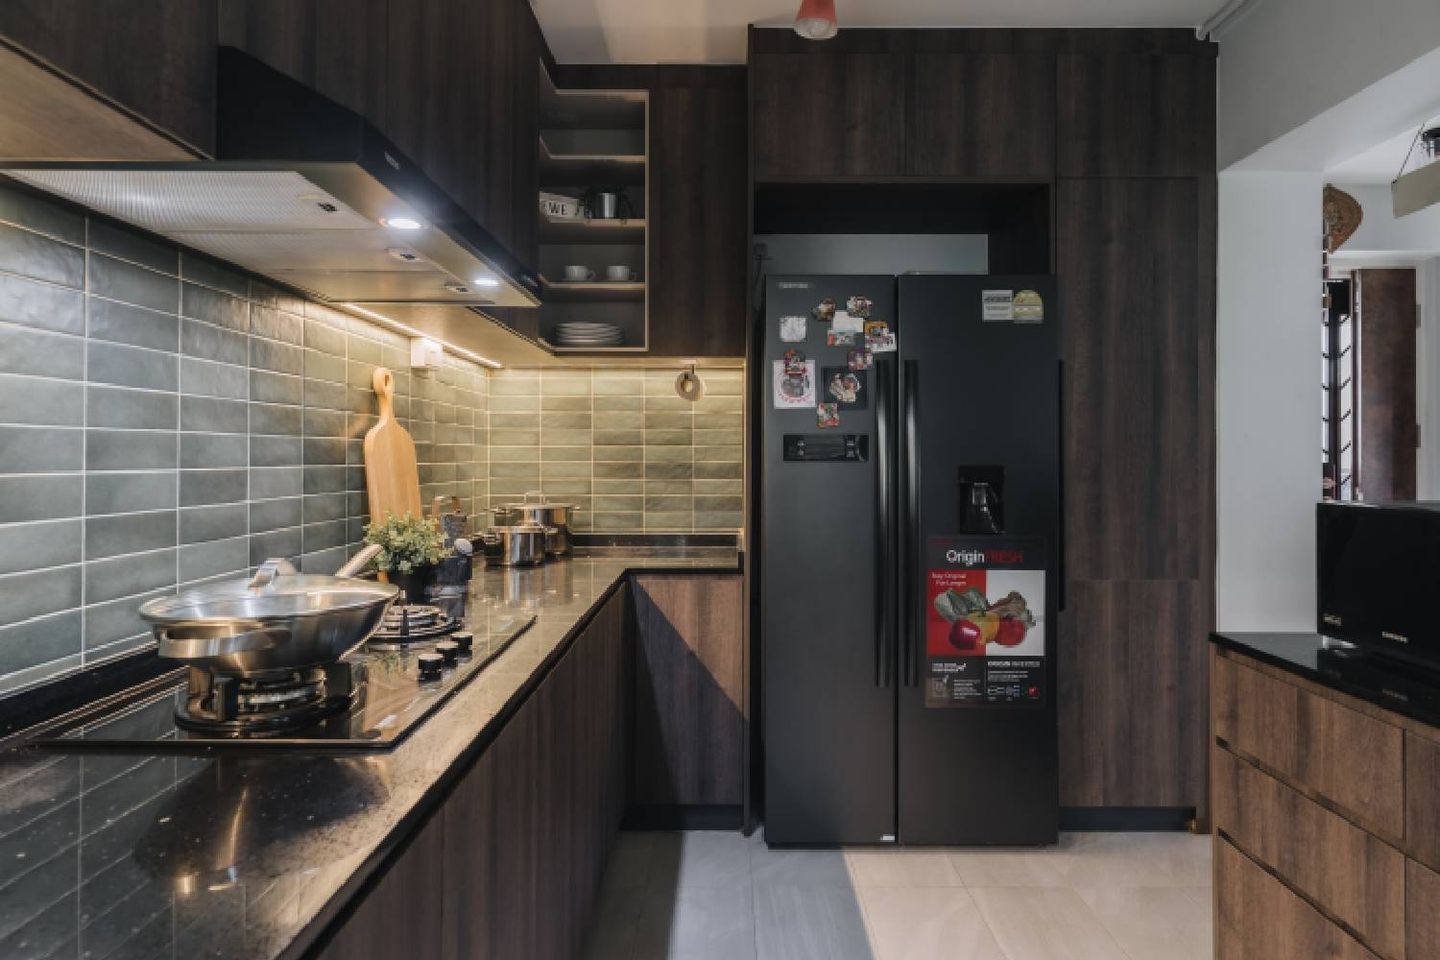 Kitchen Backsplash With Green Ceramic Tiling Design - Livspace